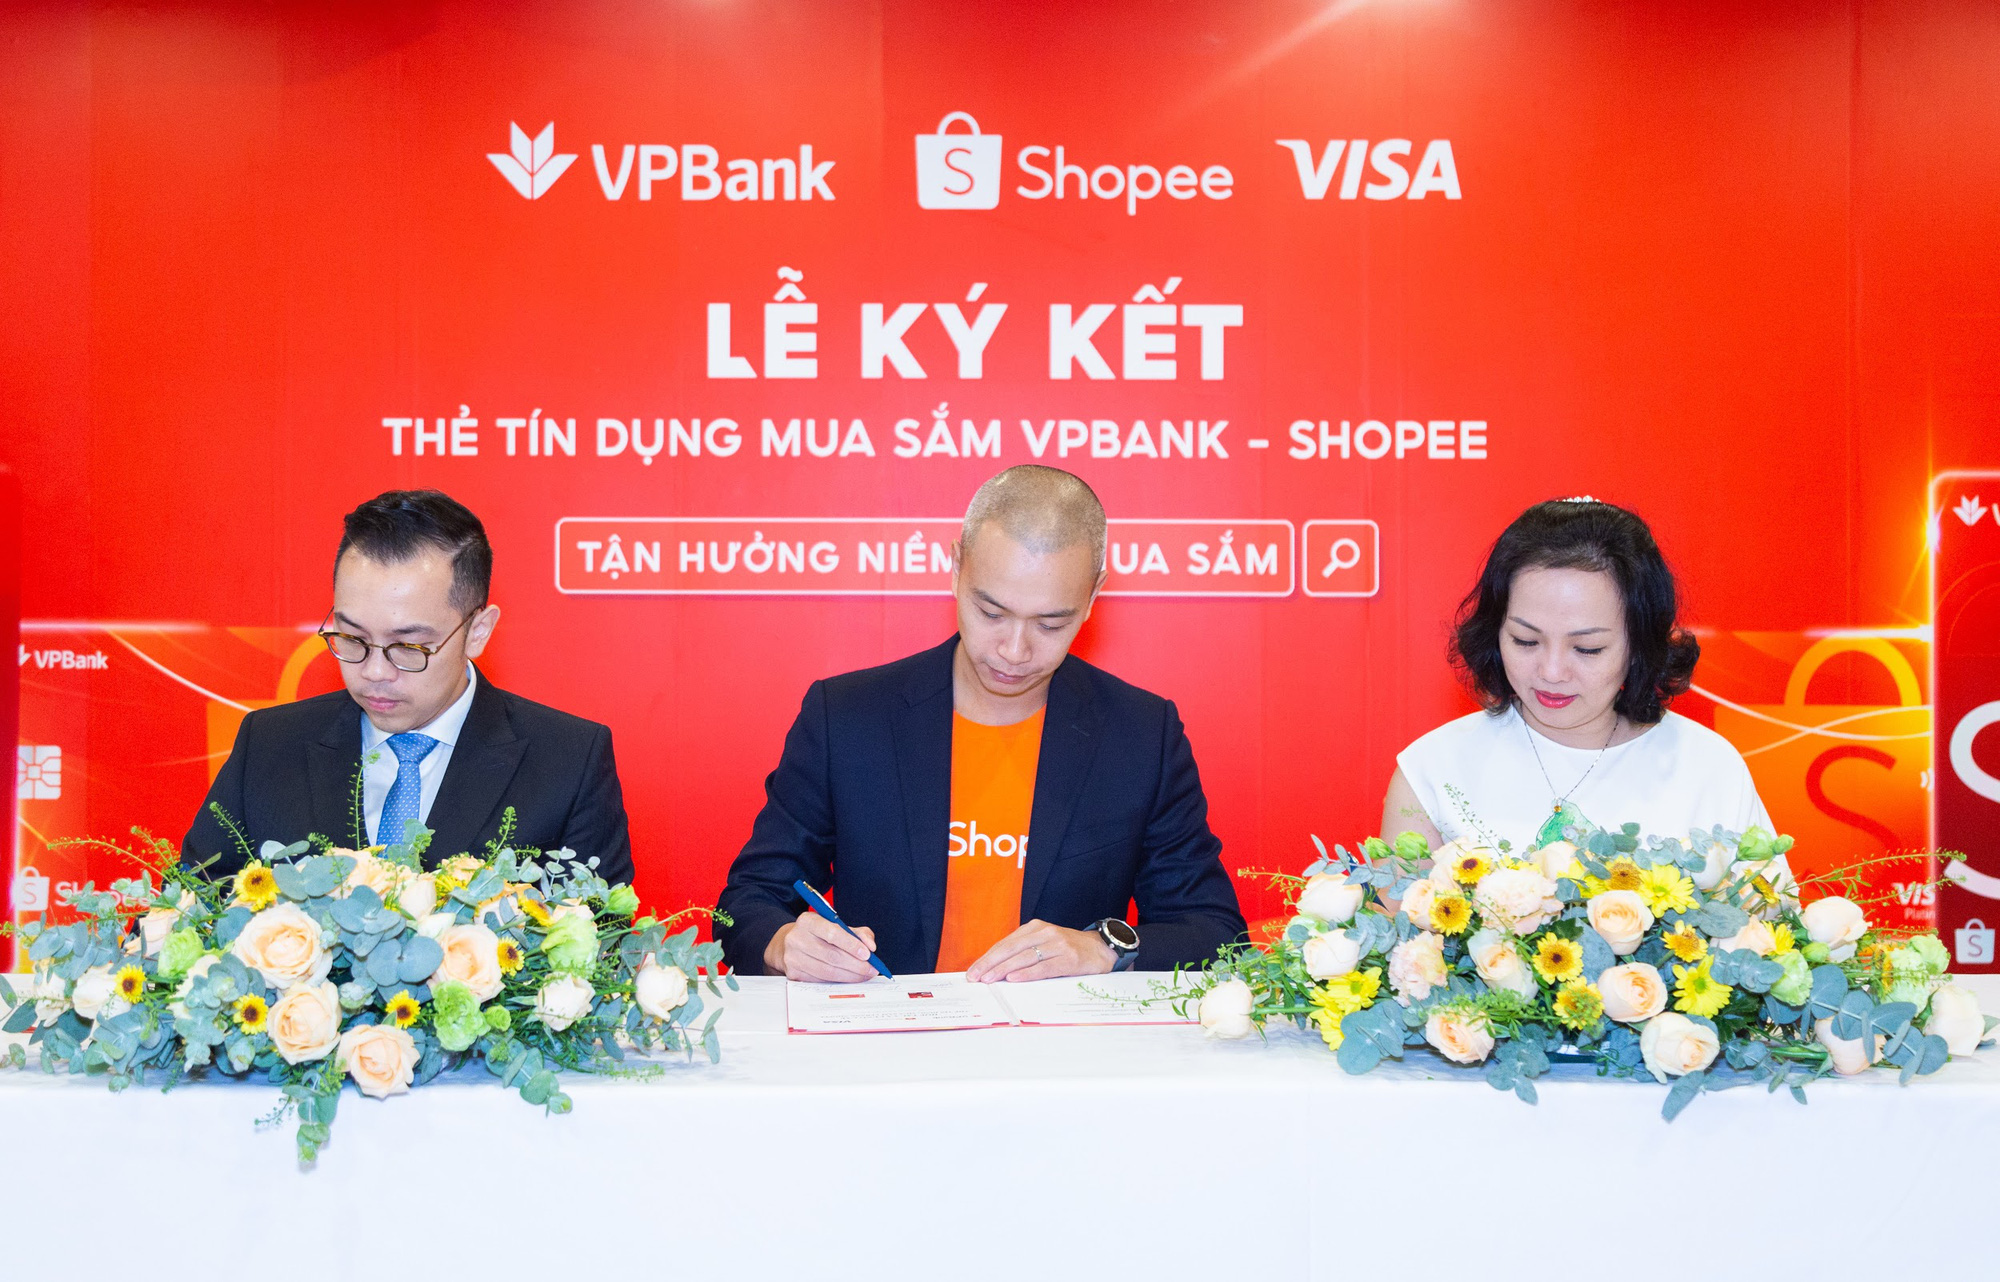 Shopee hợp tác với VPBank và Visa ra mắt “Thẻ tín dụng VPBank Shopee” - Ảnh 1.